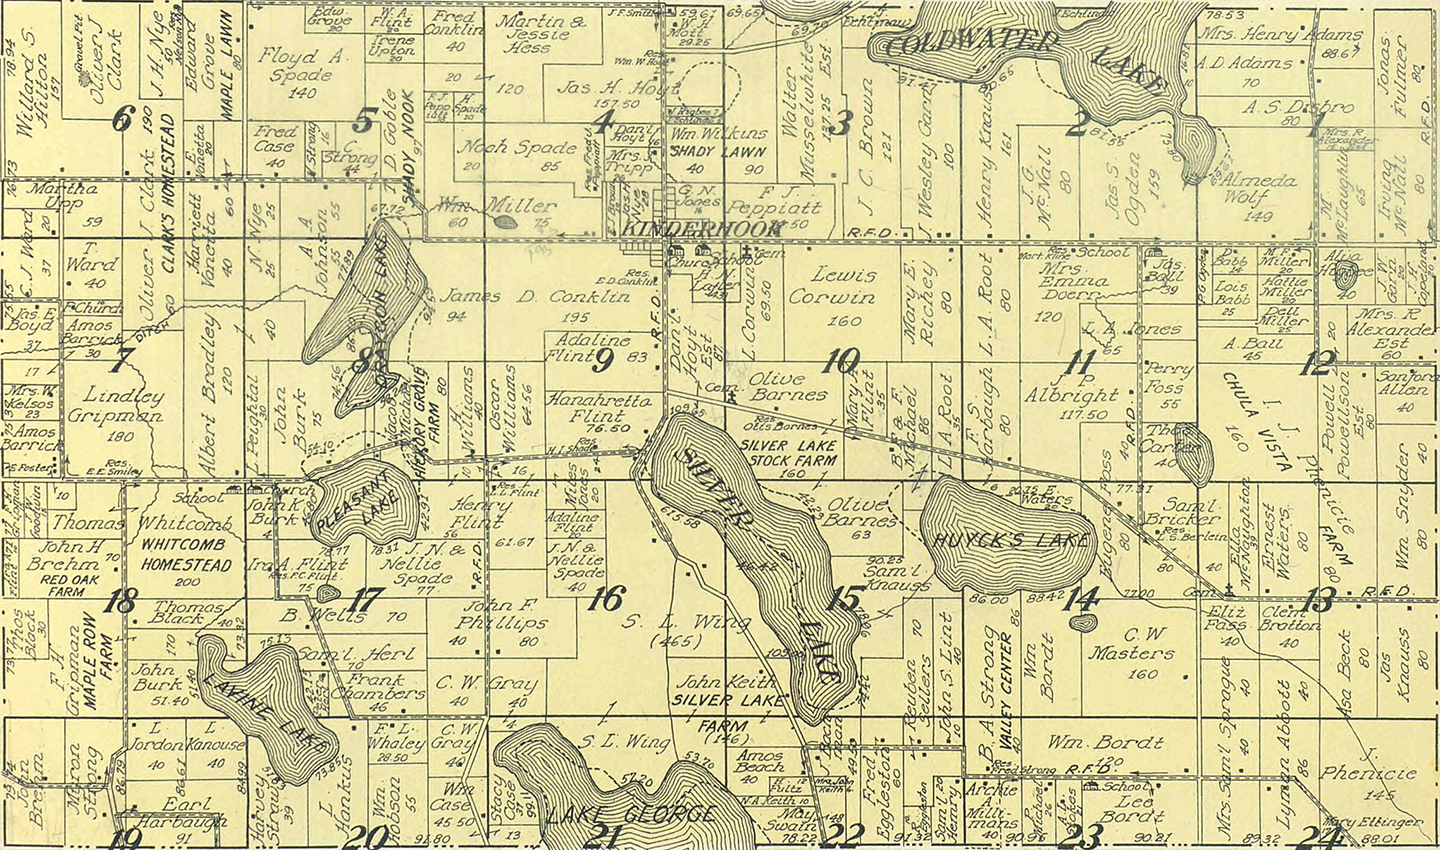 1915 Kinderhook Township, Michigan landownership map